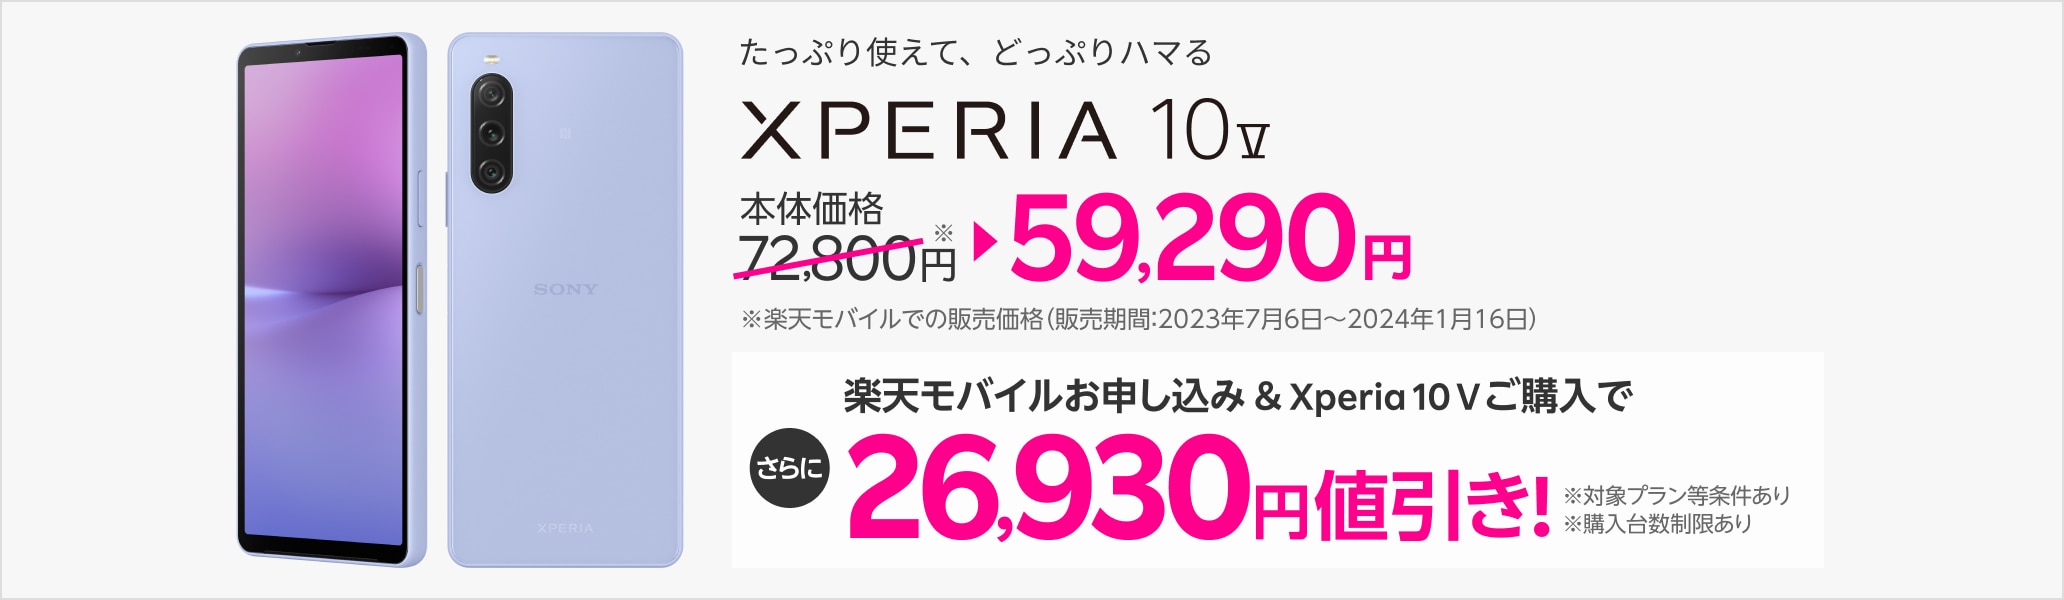 楽天モバイルお申し込み＆Xperia 10 Vご購入で26,930円値引き